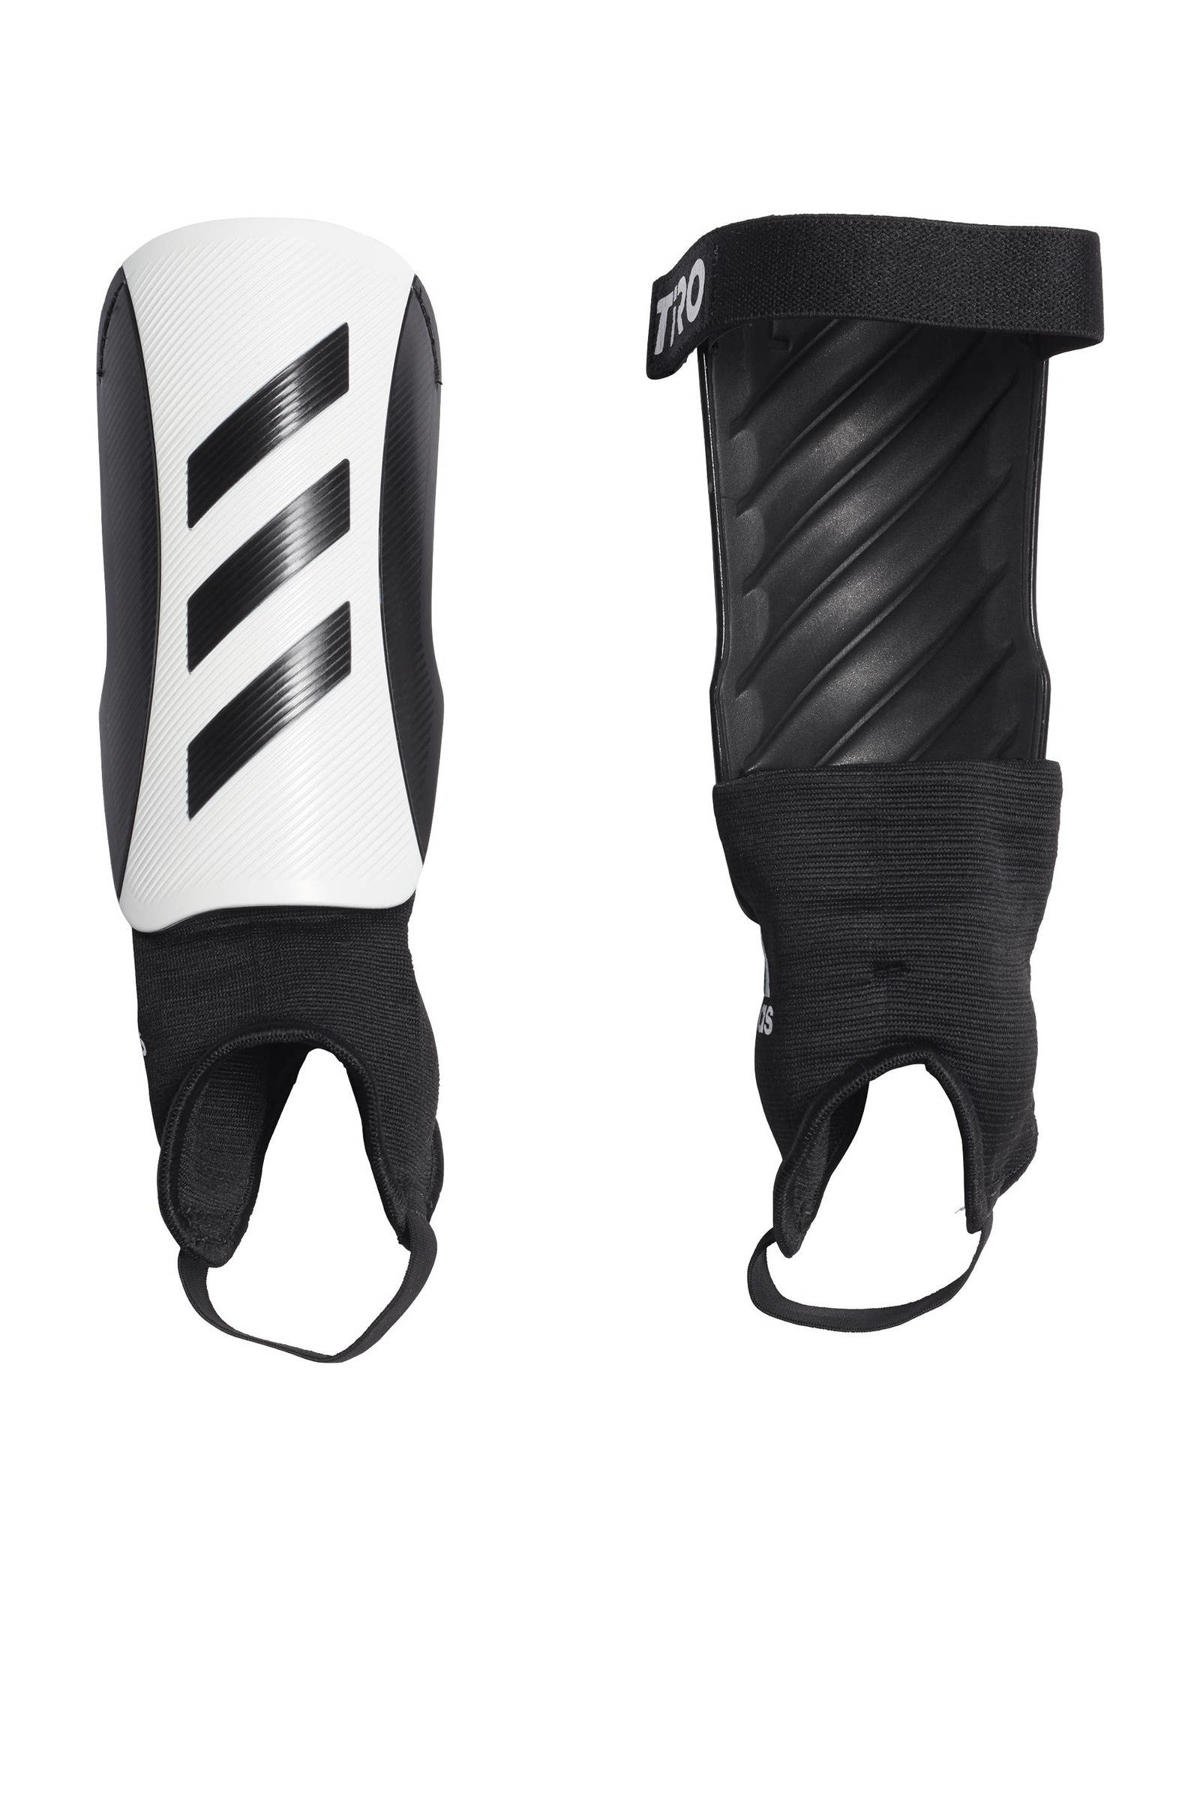 adidas Senior Tiro Match scheenbeschermers wit/zwart | wehkamp